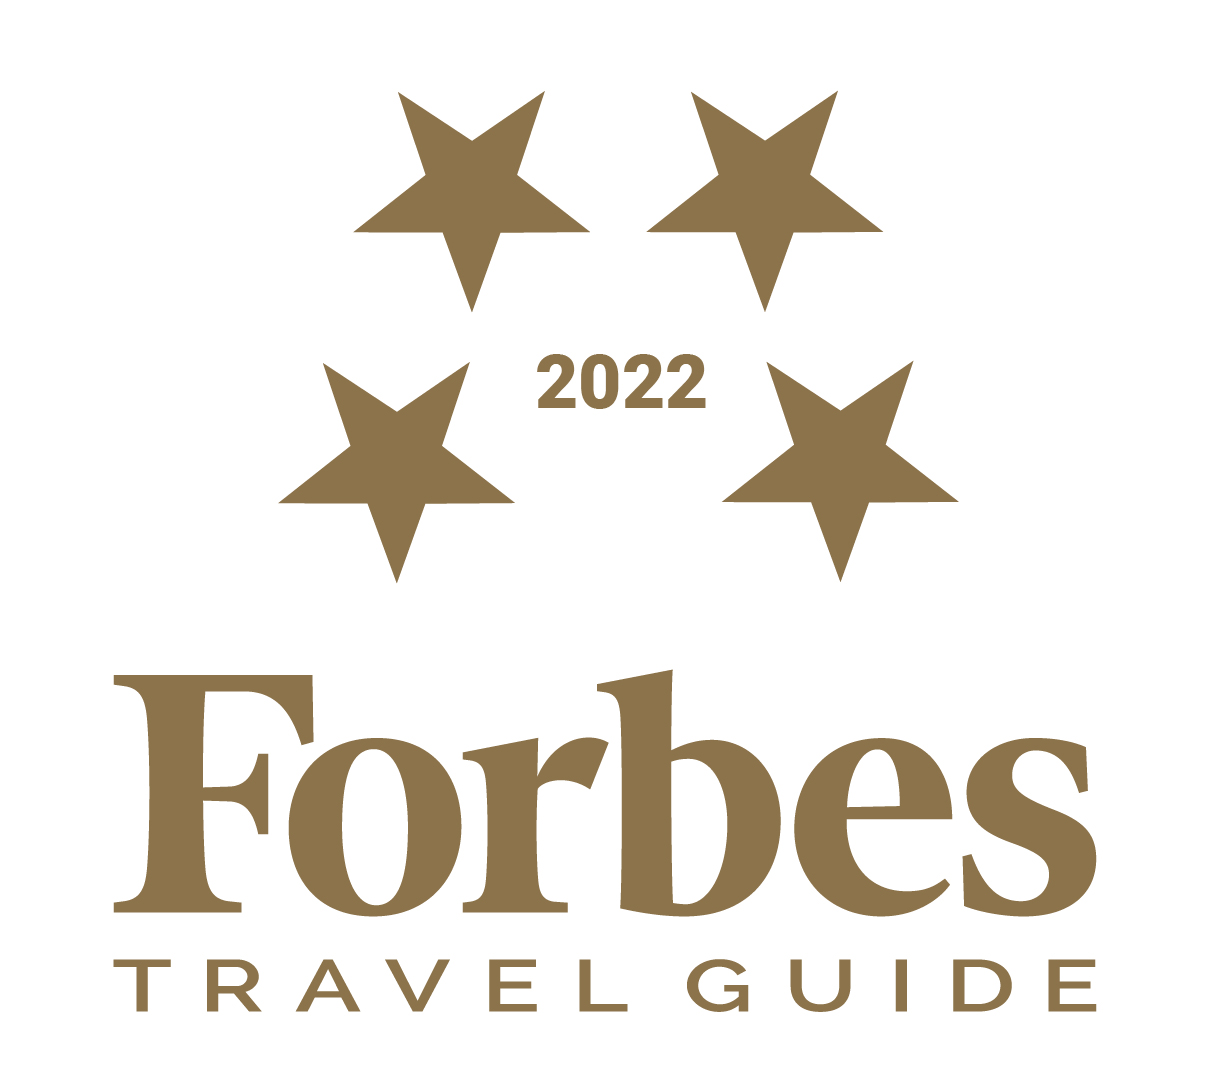 荣获2022年富比士旅游指南四星级评等，连续3年蝉联四星级认证